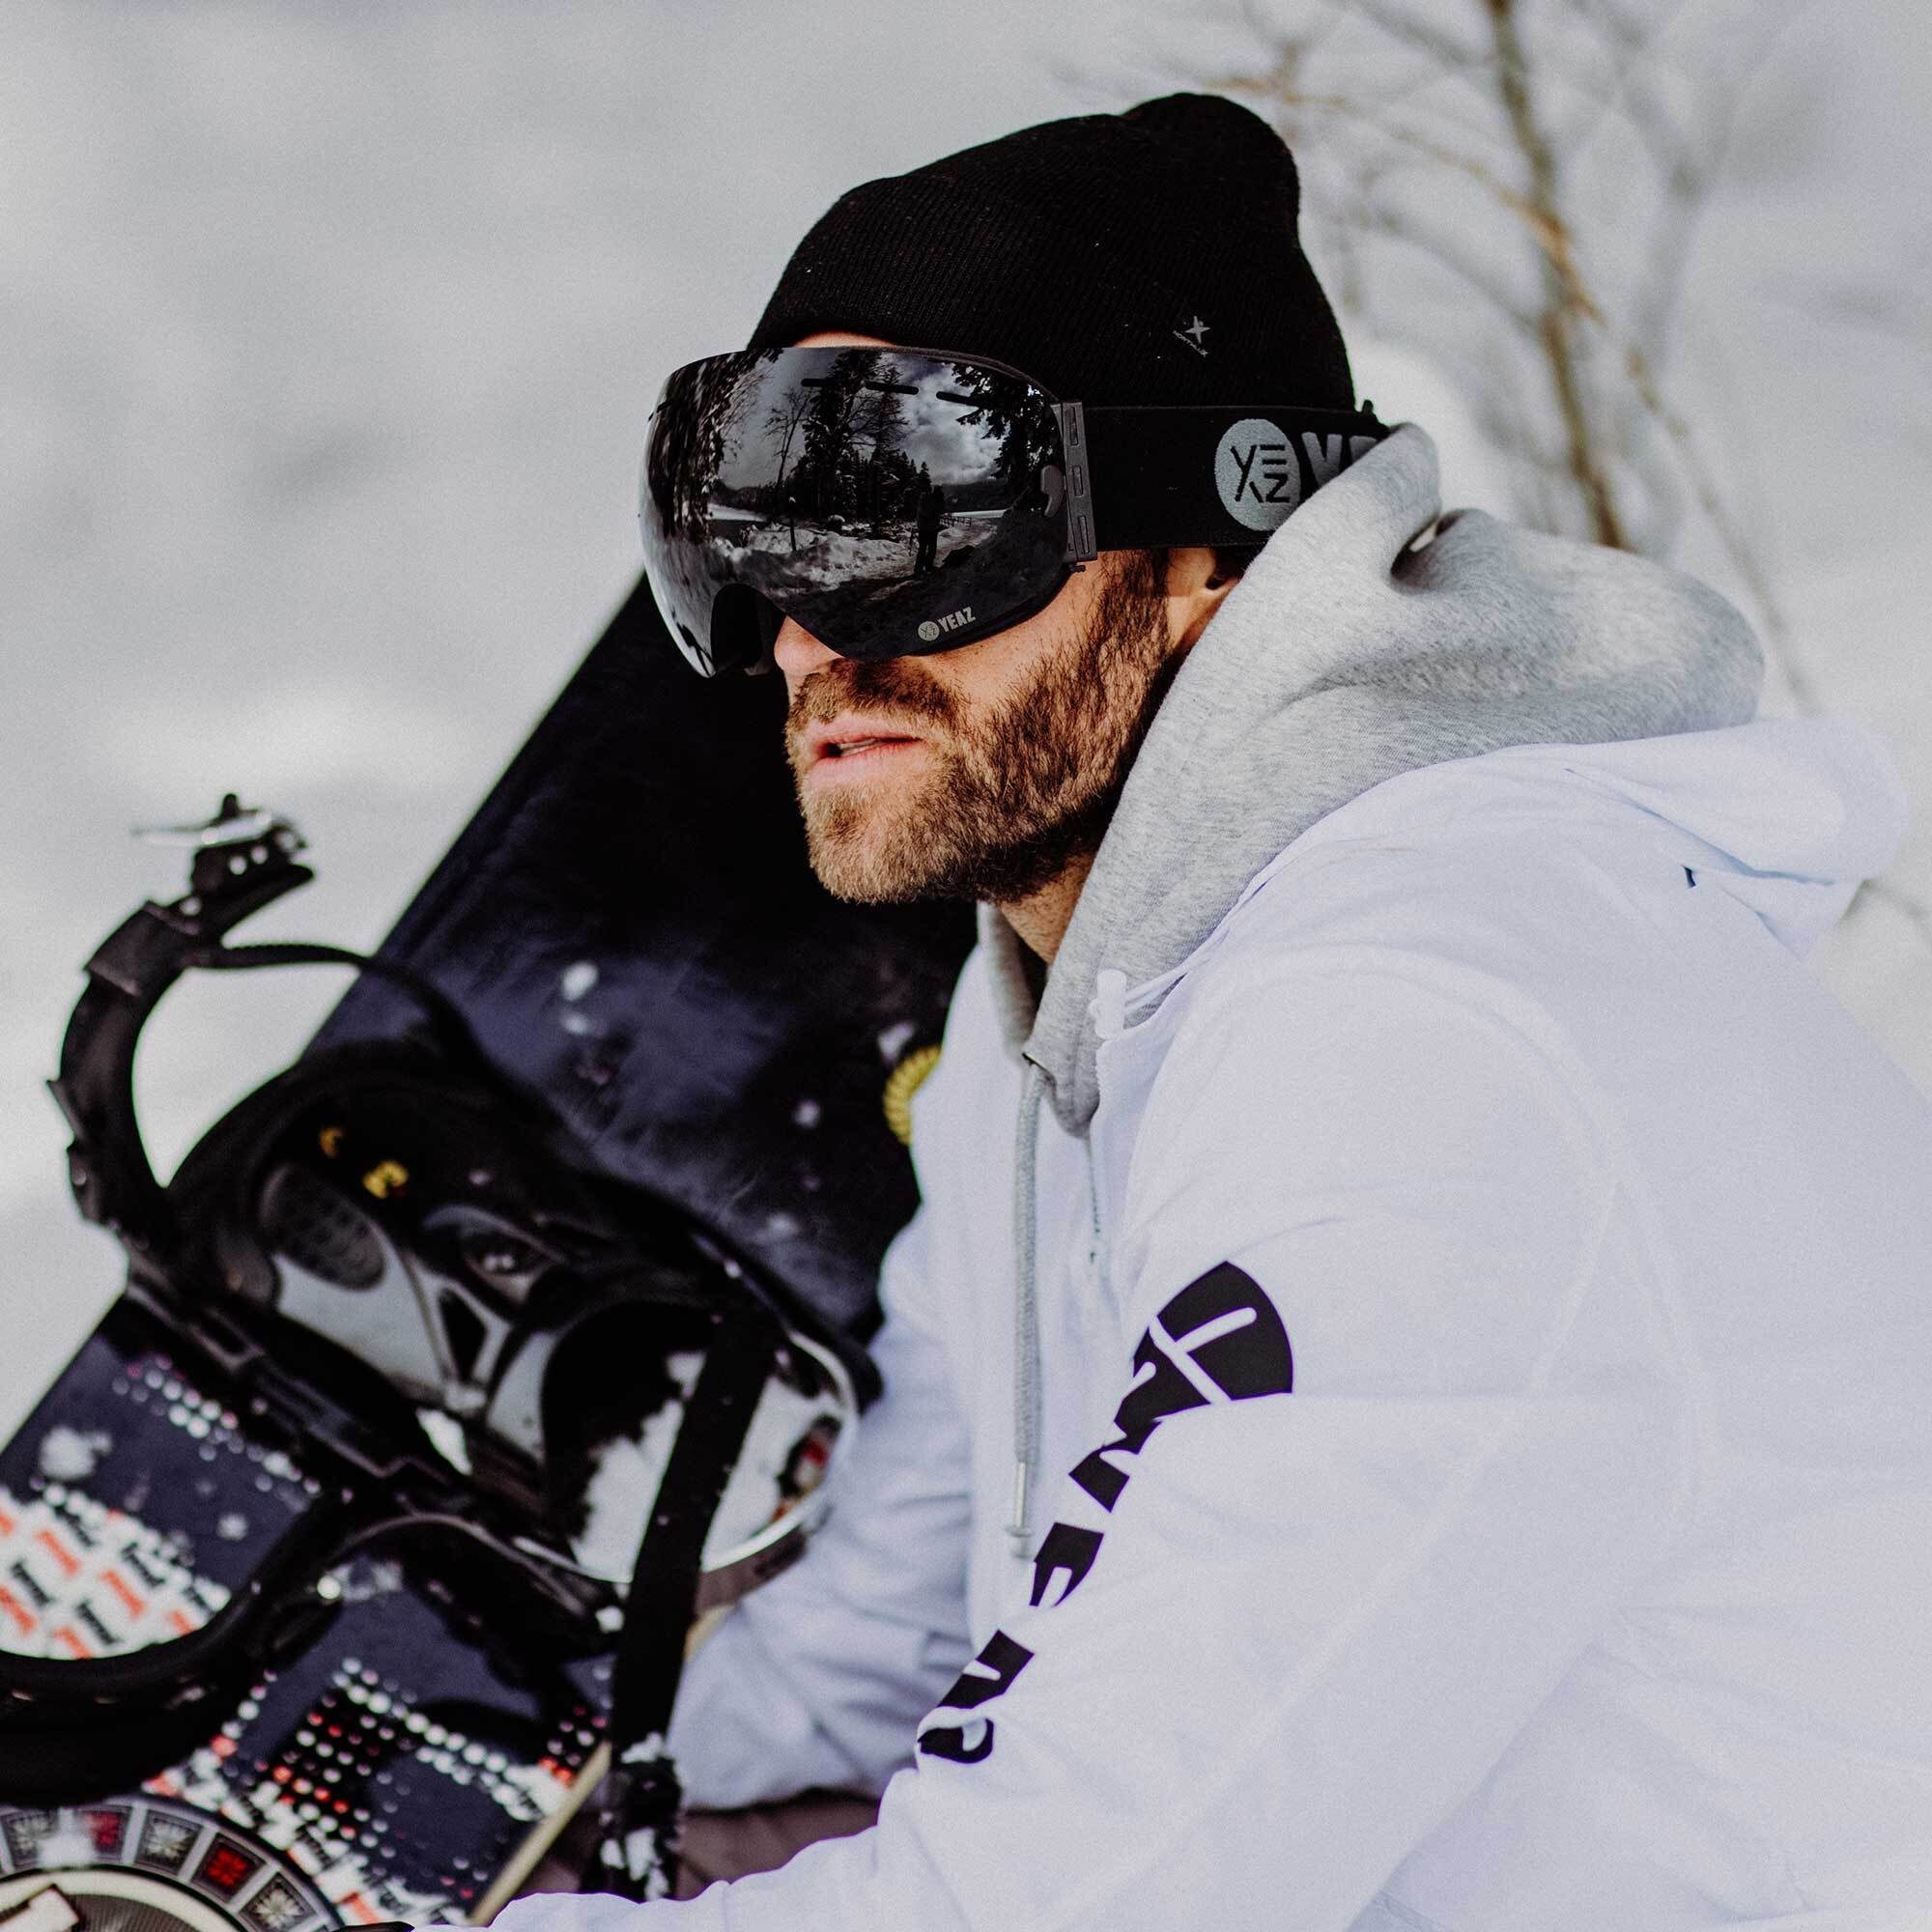 für YEAZ Skibrille Premium-Ski- Snowboardbrille und Jugendliche XTRM-SUMMIT, und Erwachsene